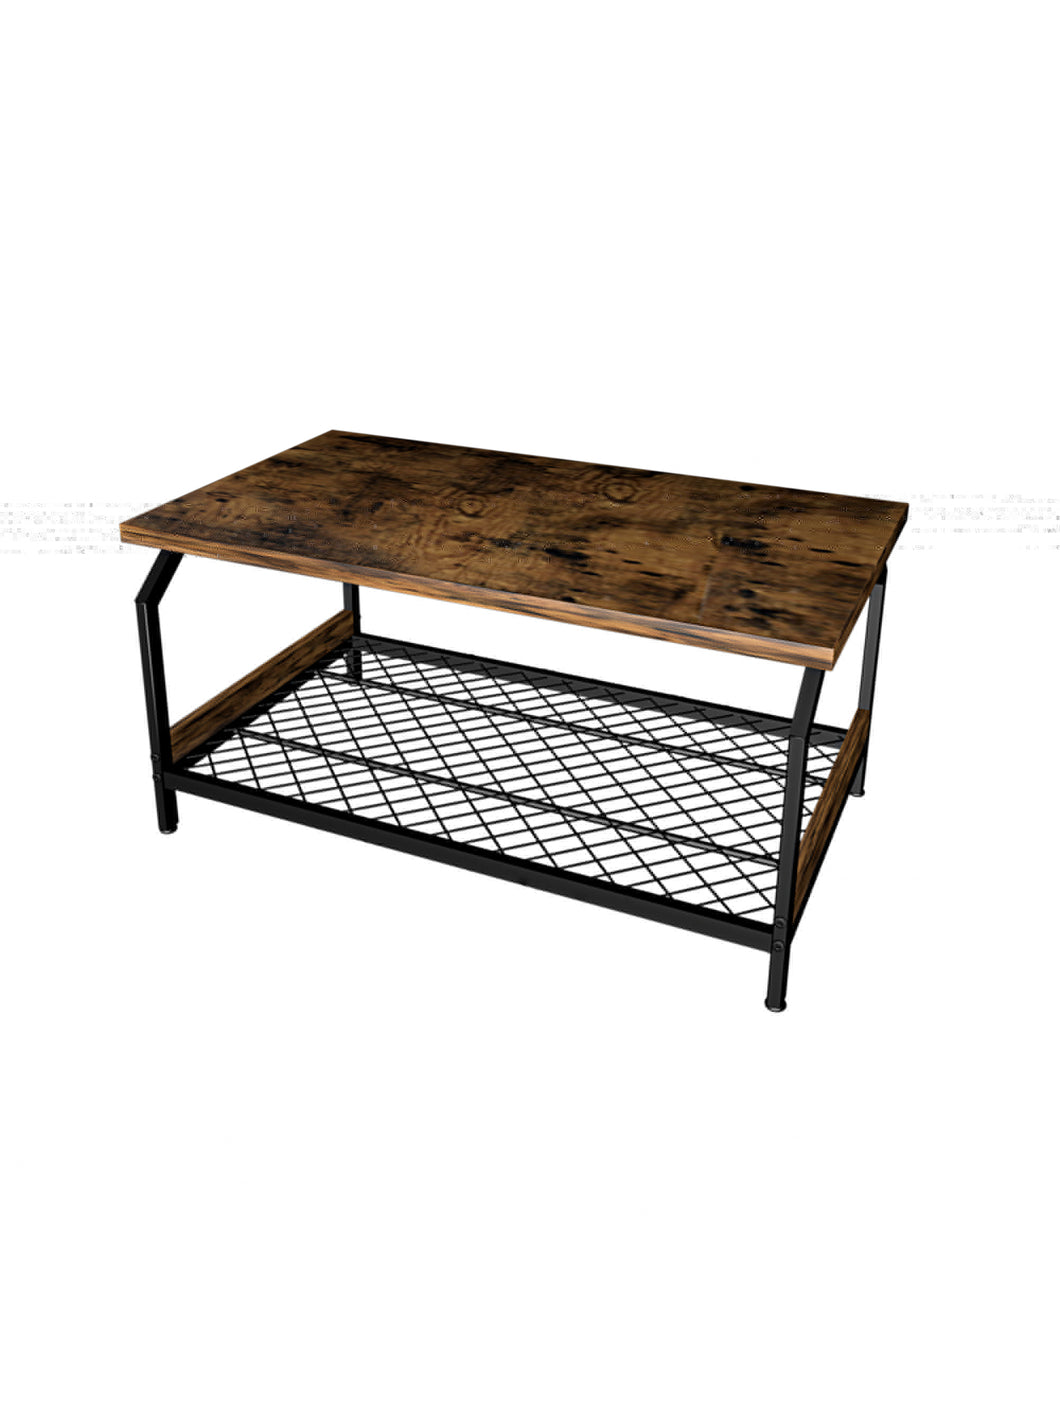 Wood Coffee Anti-Rust Iron Table With Black Mesh Shelf